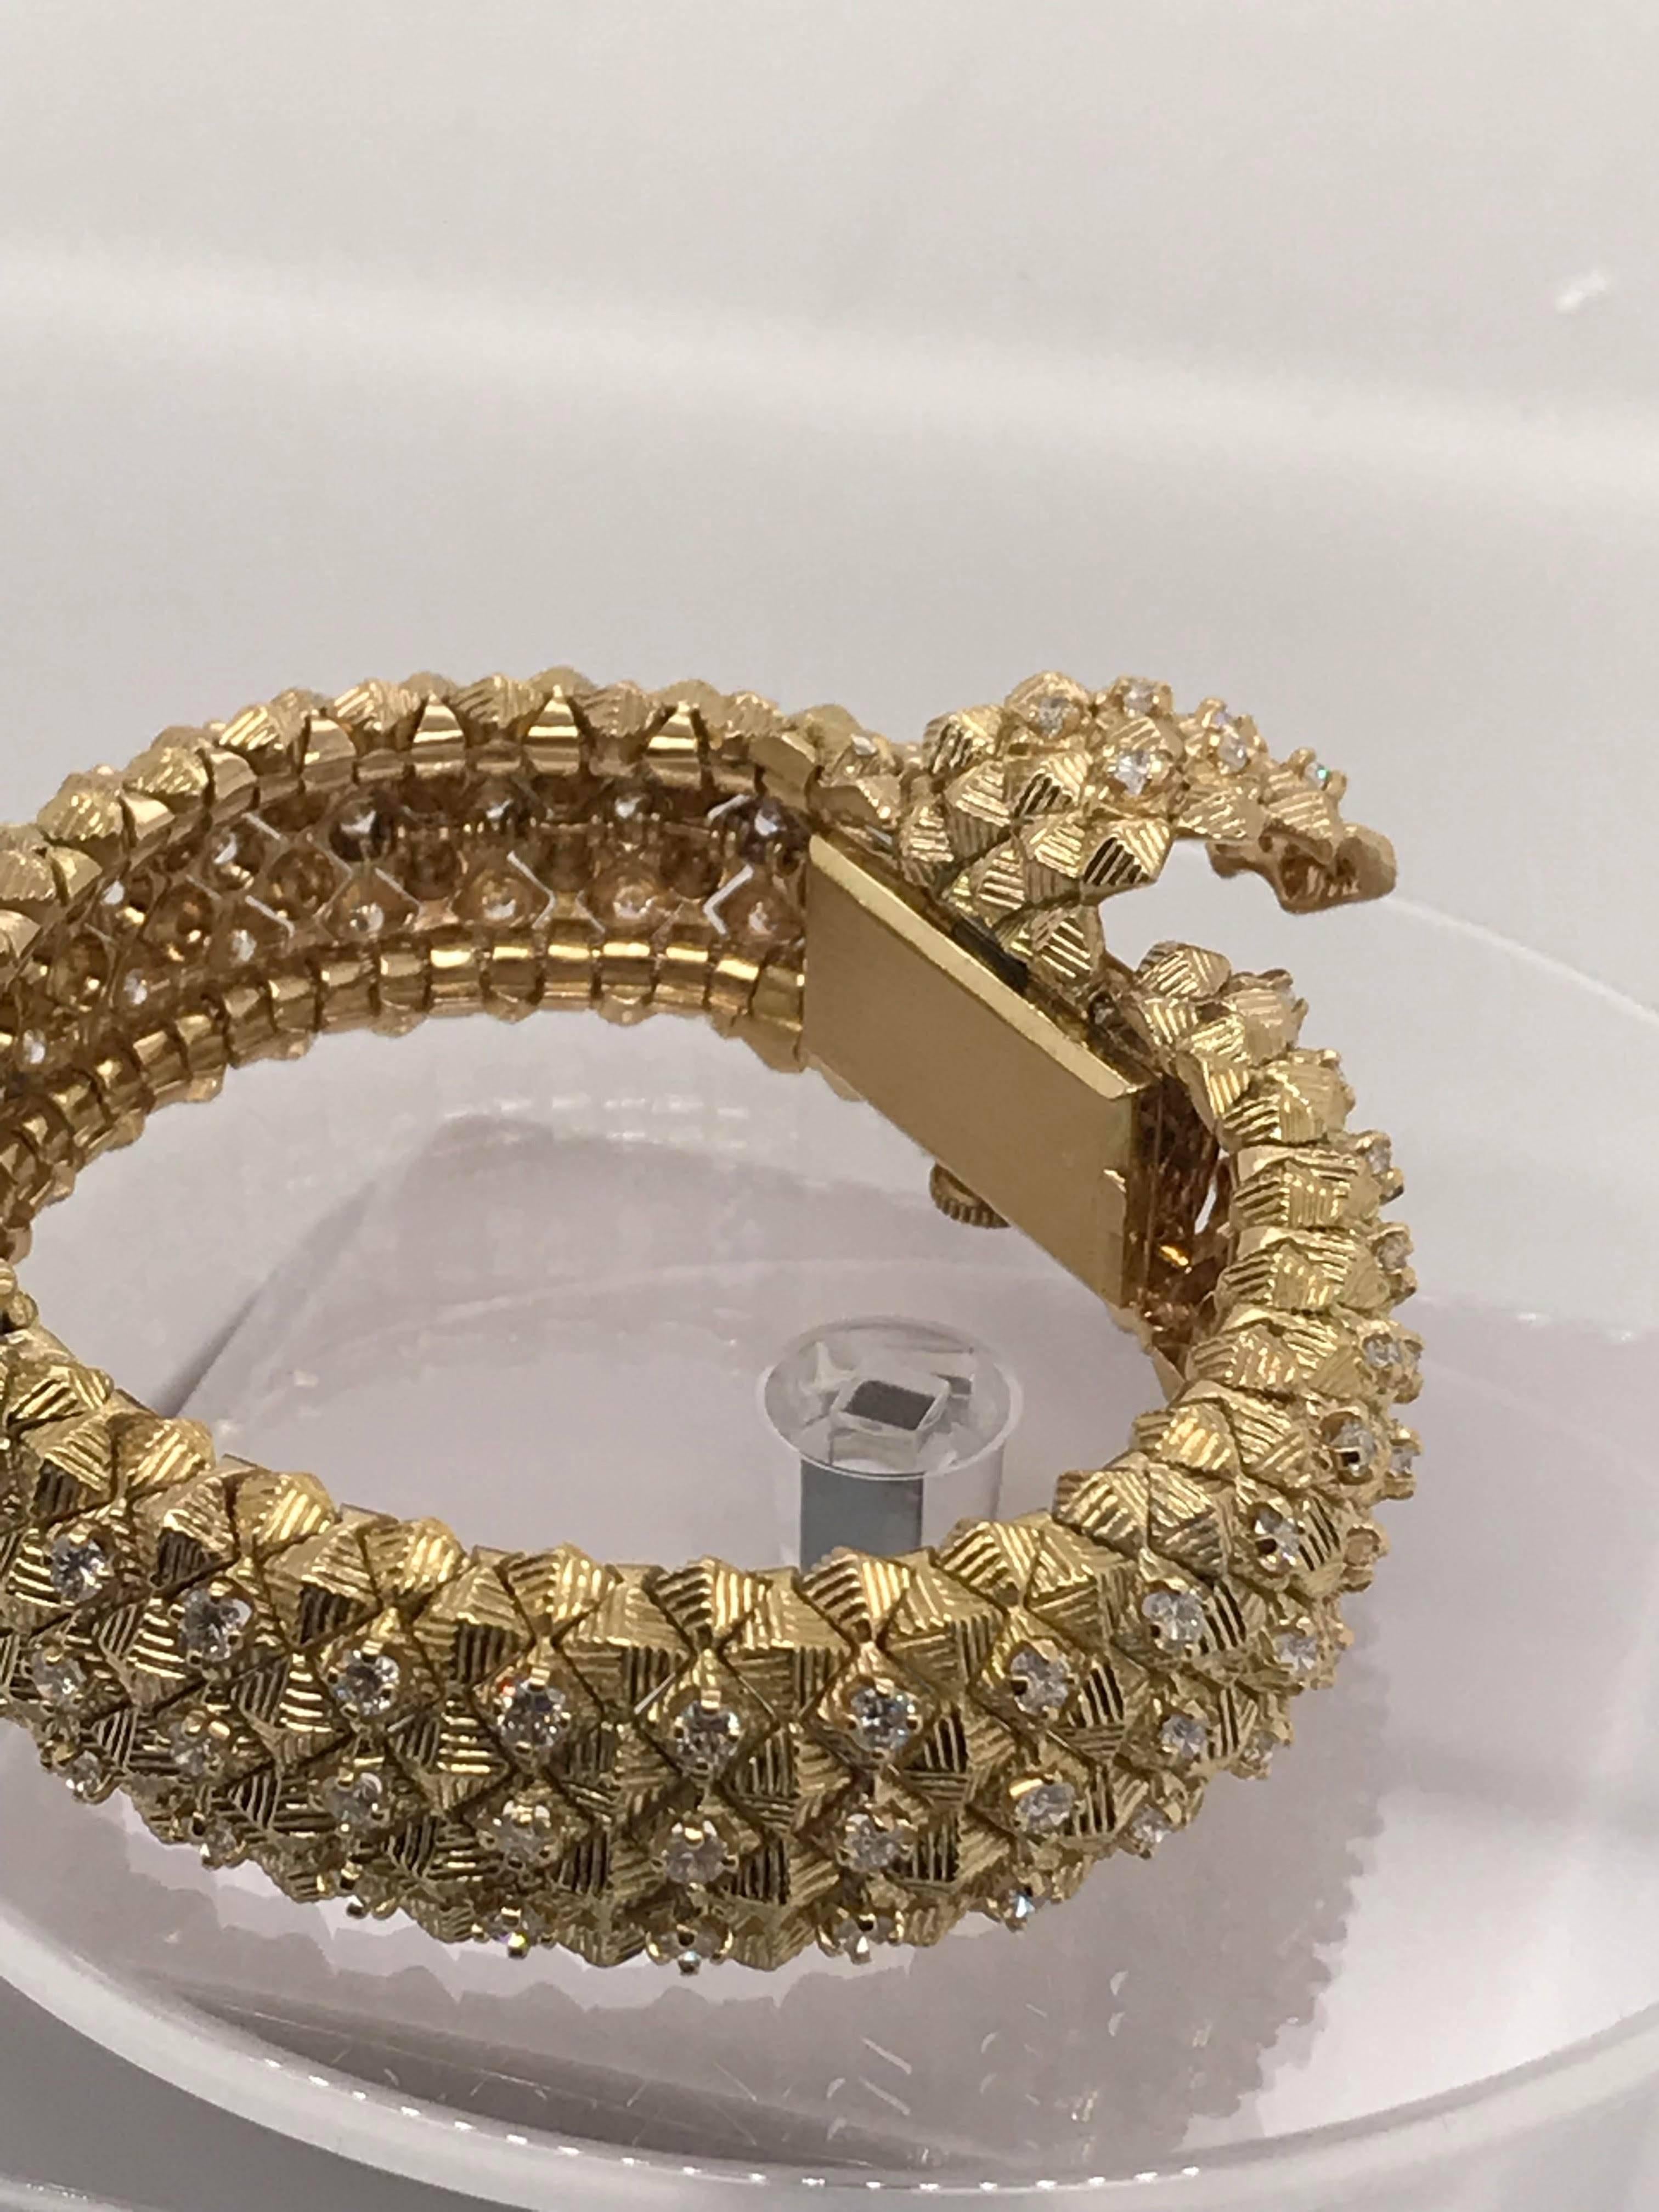 Brand: Tiffany & Co

Style: Bracelet & Watch

Diamonds: 5.00 ct

Diamonds: F-Vs1

Hallmarked: Tiffany & Co 750 C+B

Size: 7